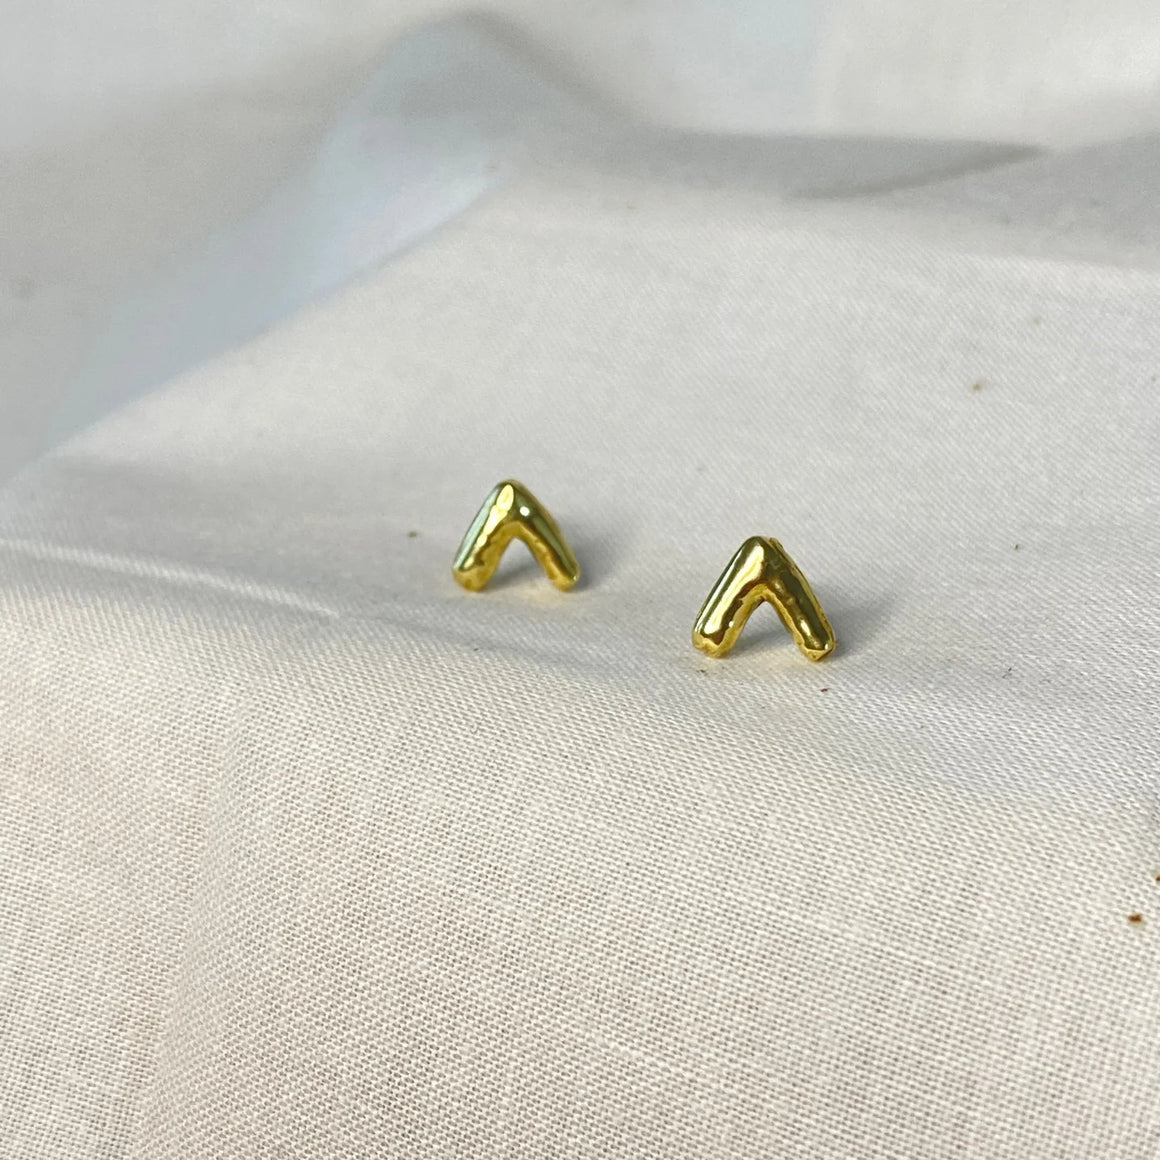 Everest brass stud earrings